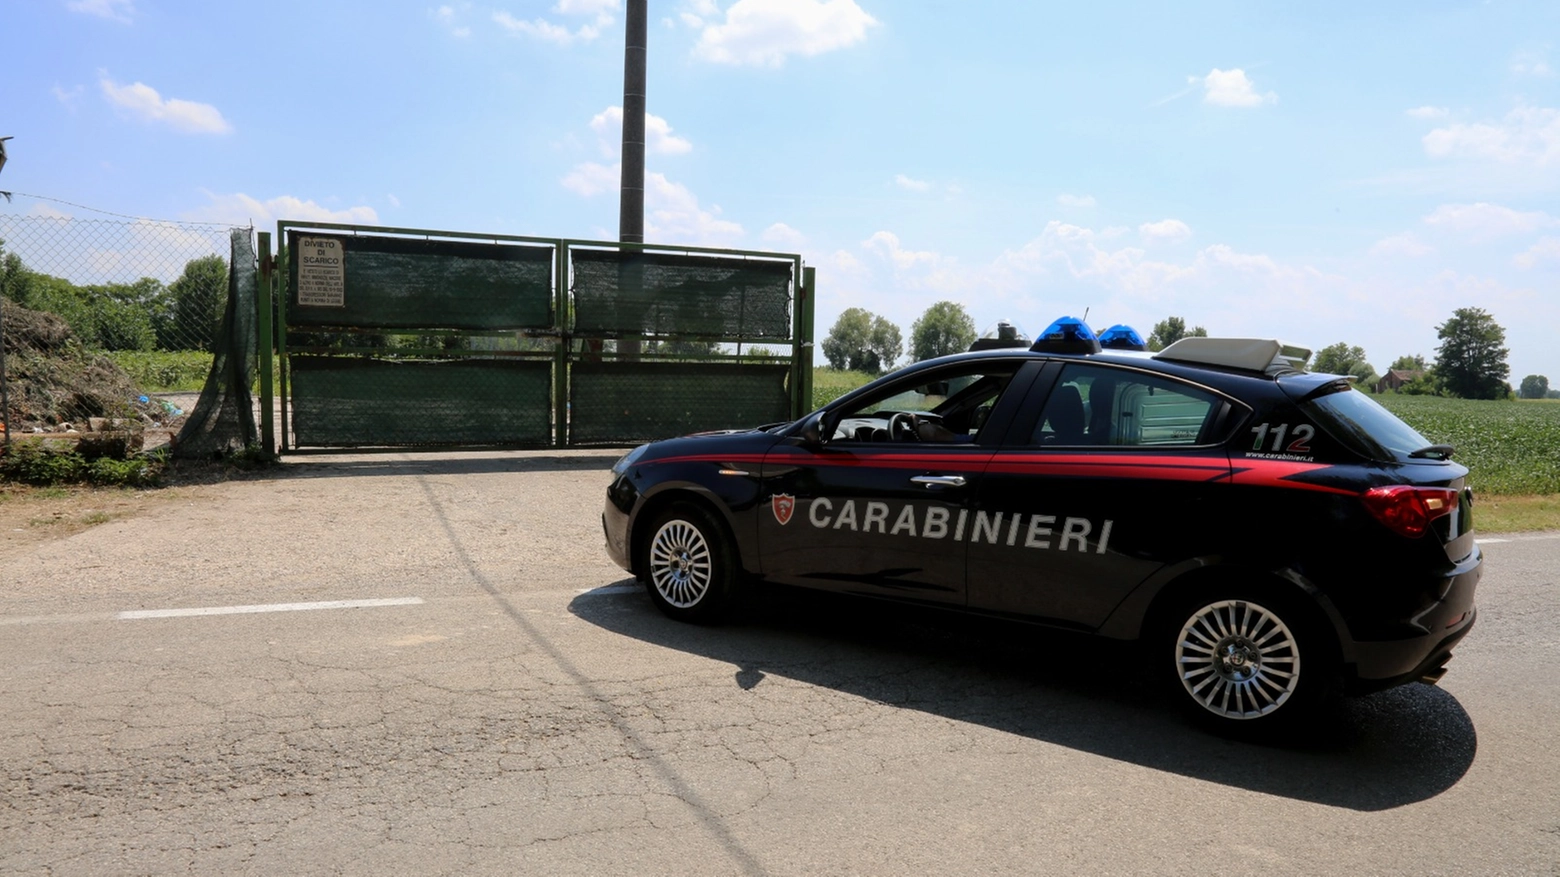 La denuncia è stata presentata ai carabinieri di Desenzano (Archivio)